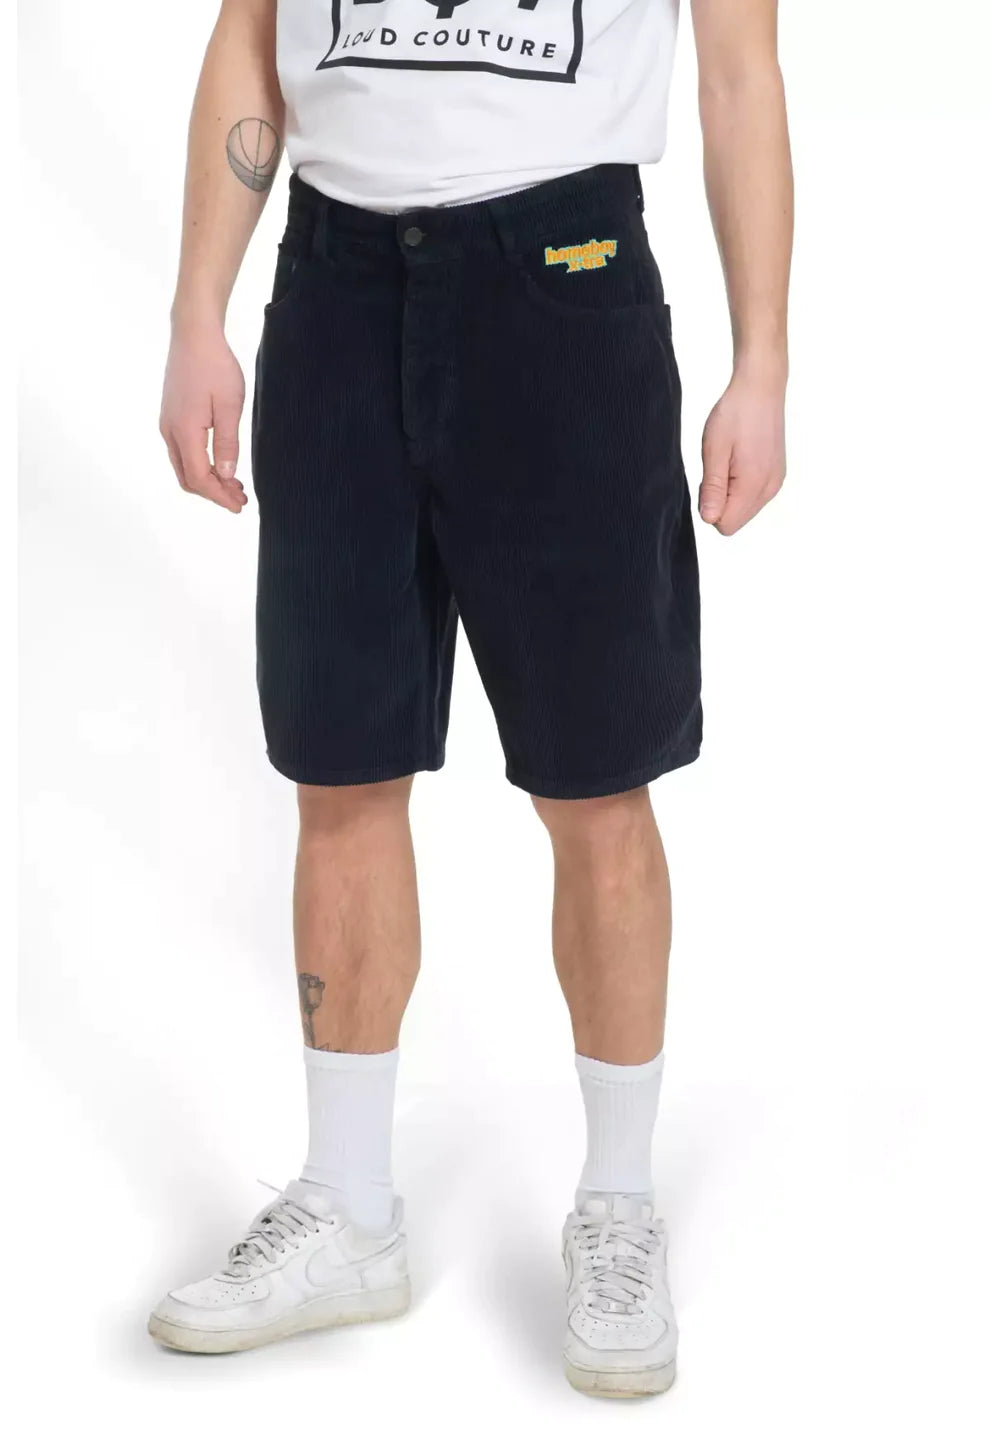 Homeboy Black baggy men's velvet shorts